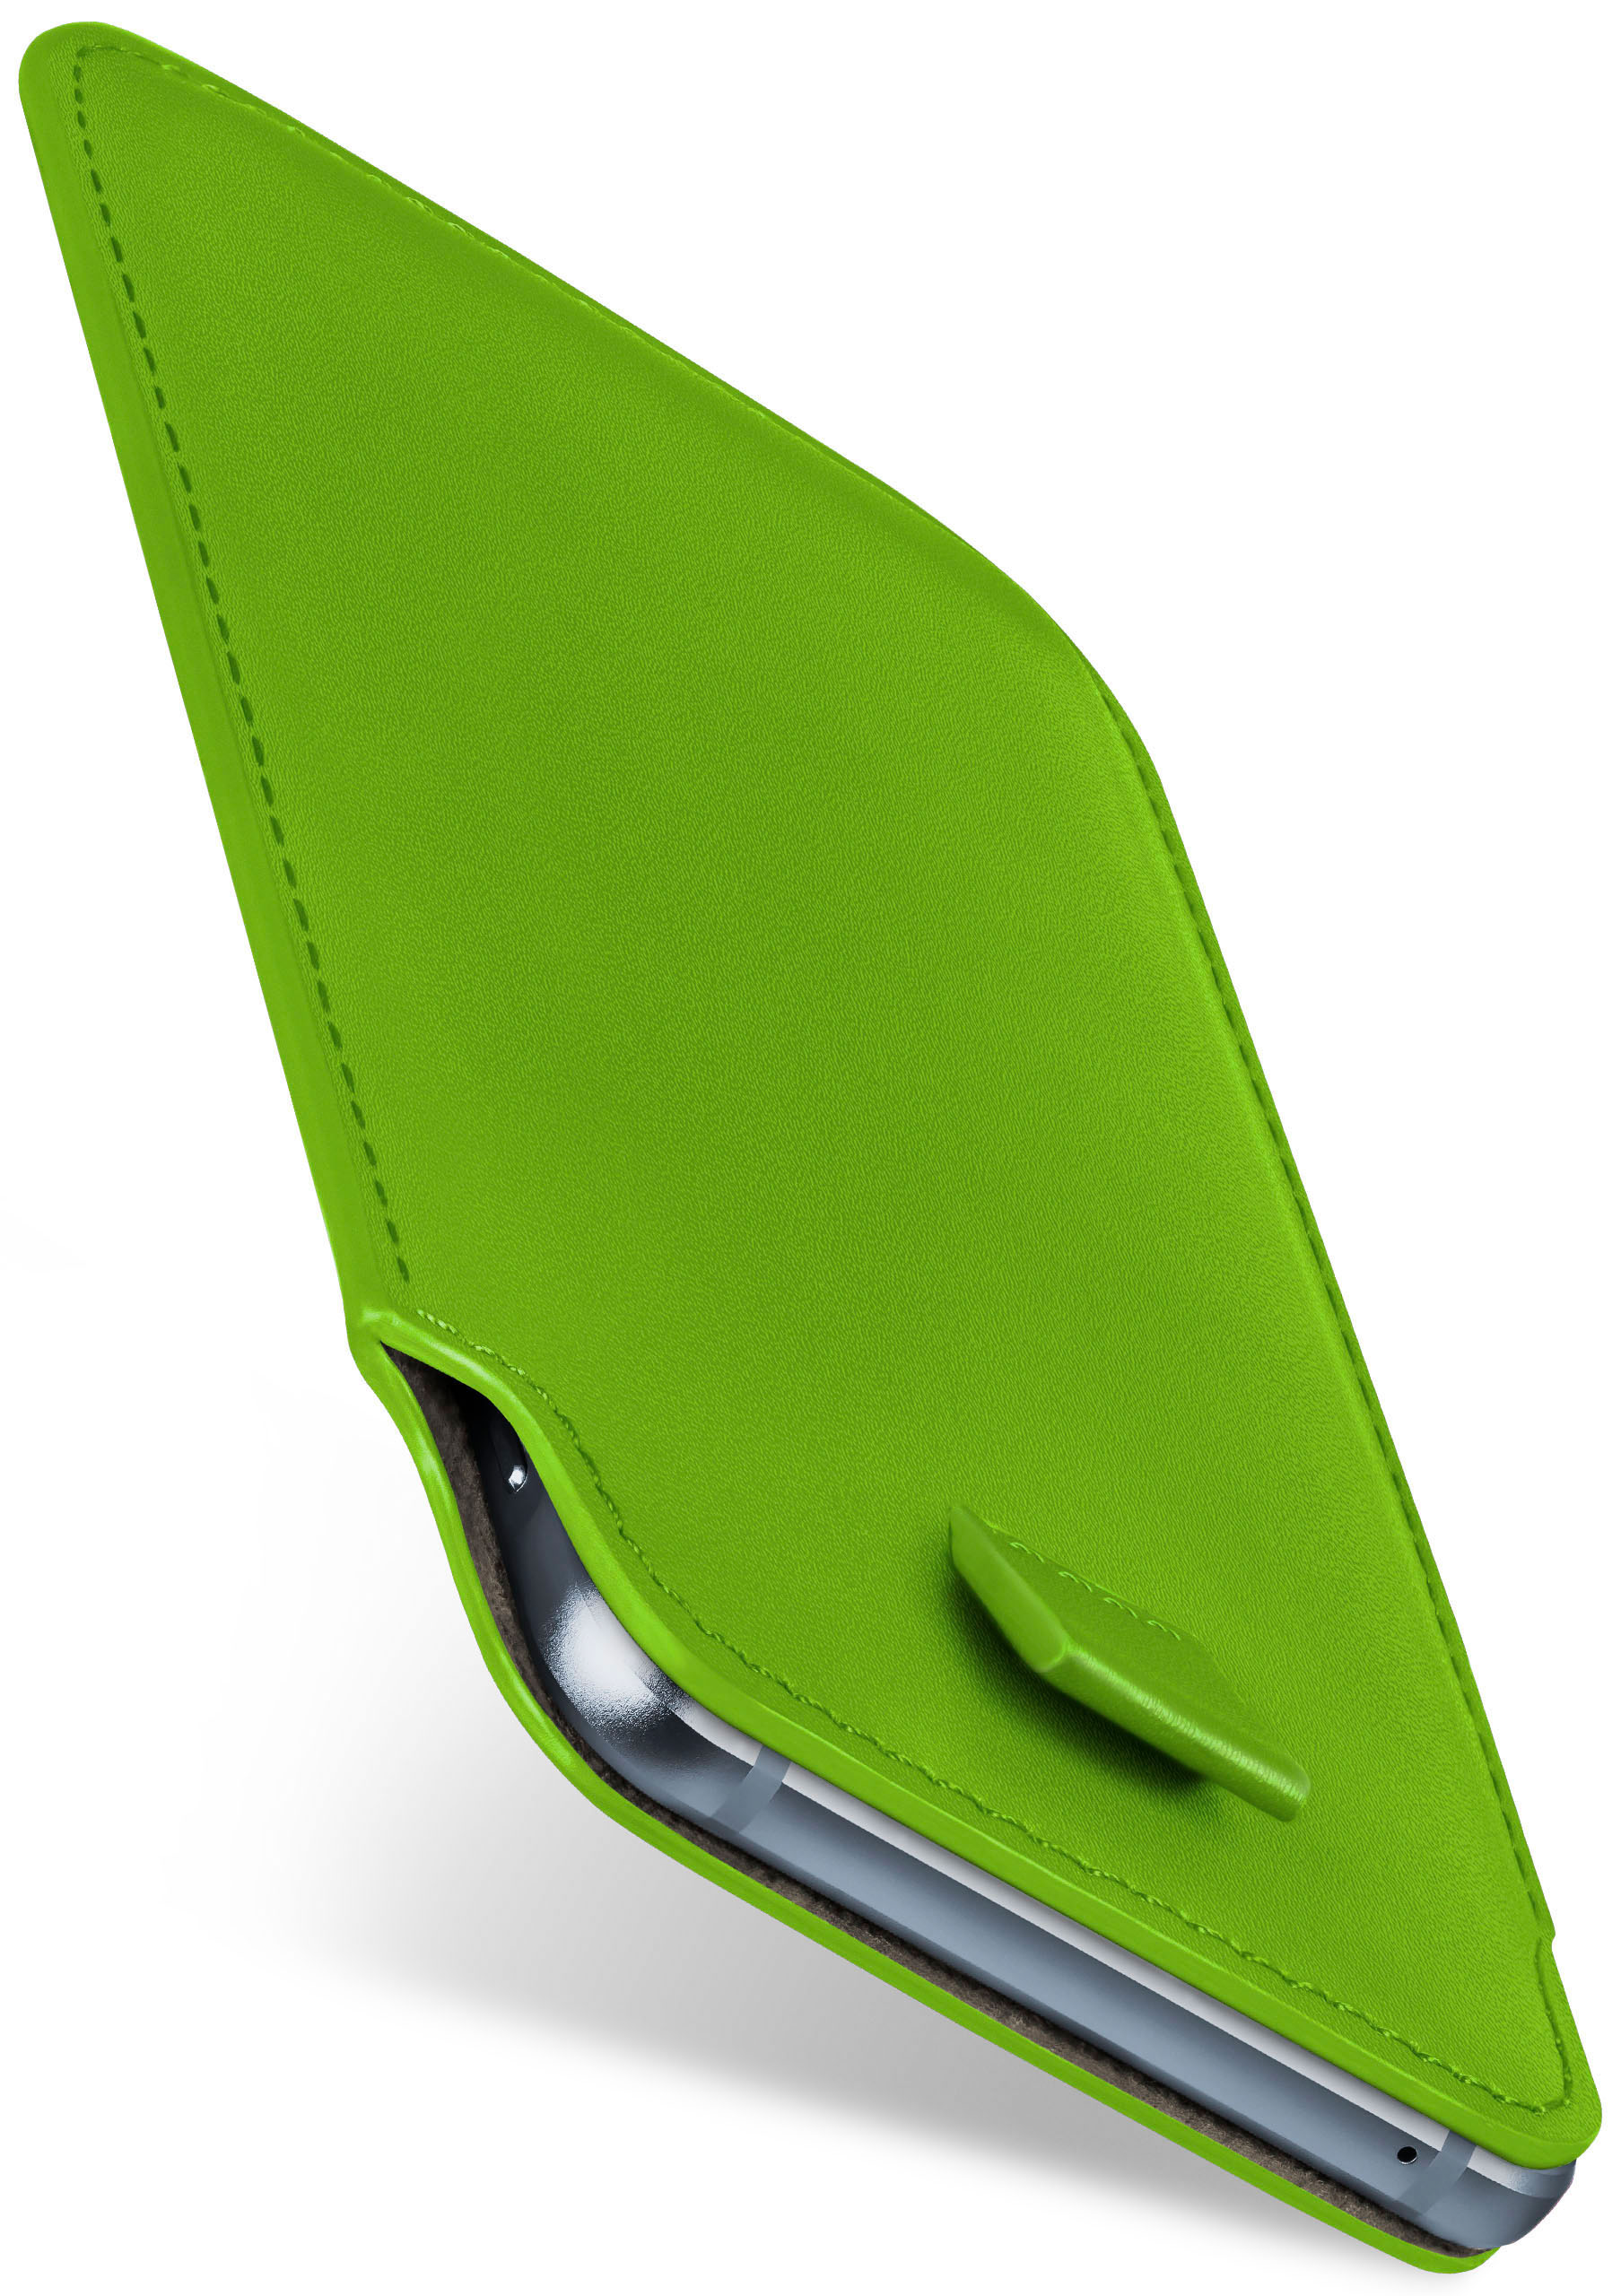 MOEX Slide Lime-Green Cover, Full BlackBerry, KEY2, Case